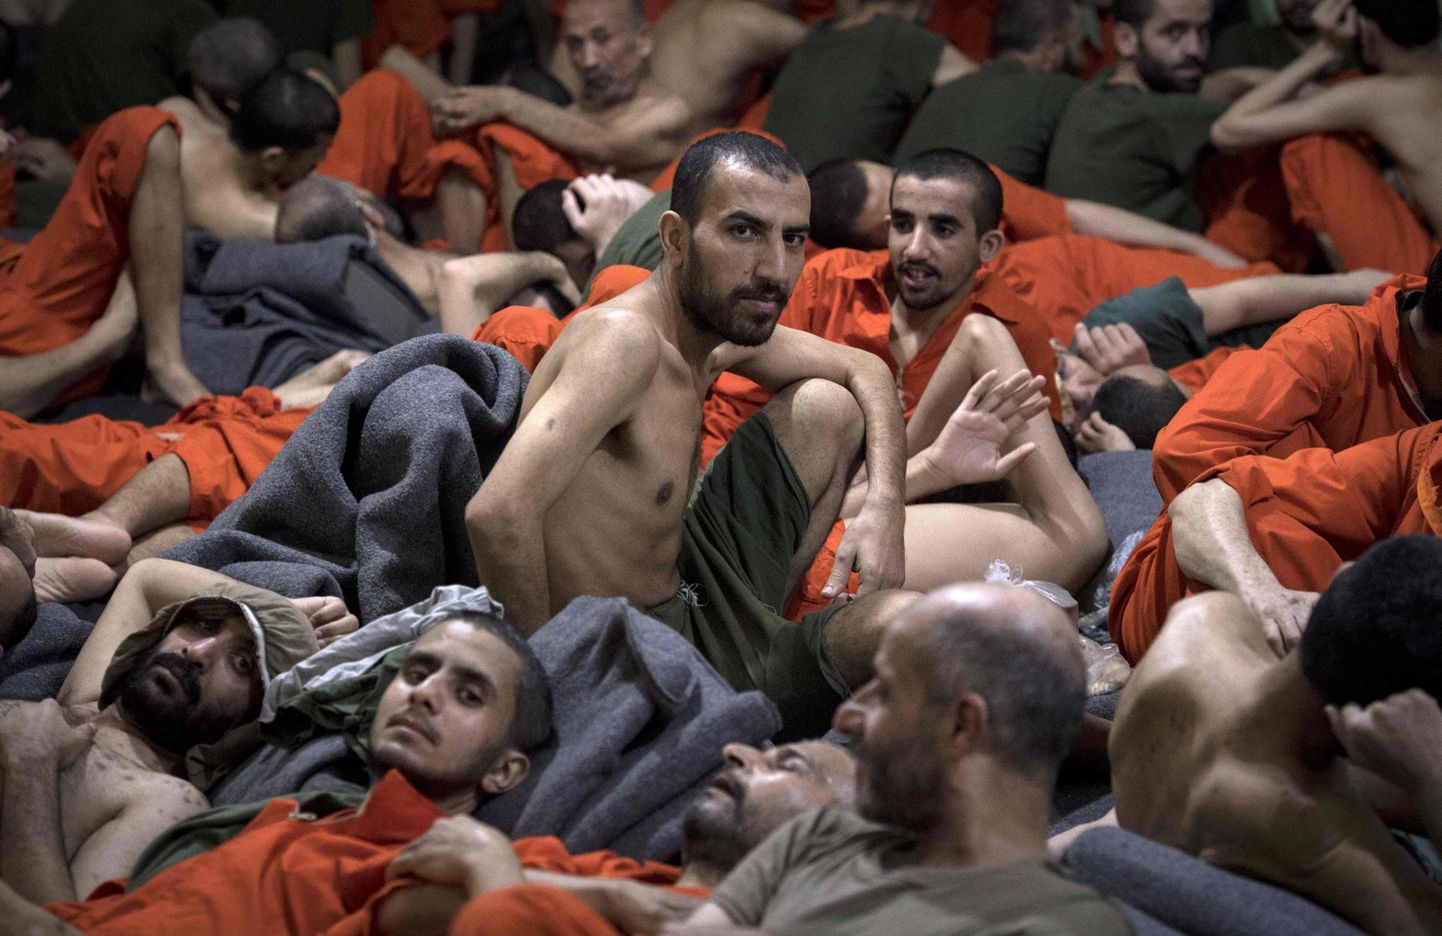 Väidetavalt äärmusrühmitusega Islamiriik (IS) seotud mehed istumas 26. oktoobril Kirde-Süürias Hasakeh's asuva vangla põrandal.